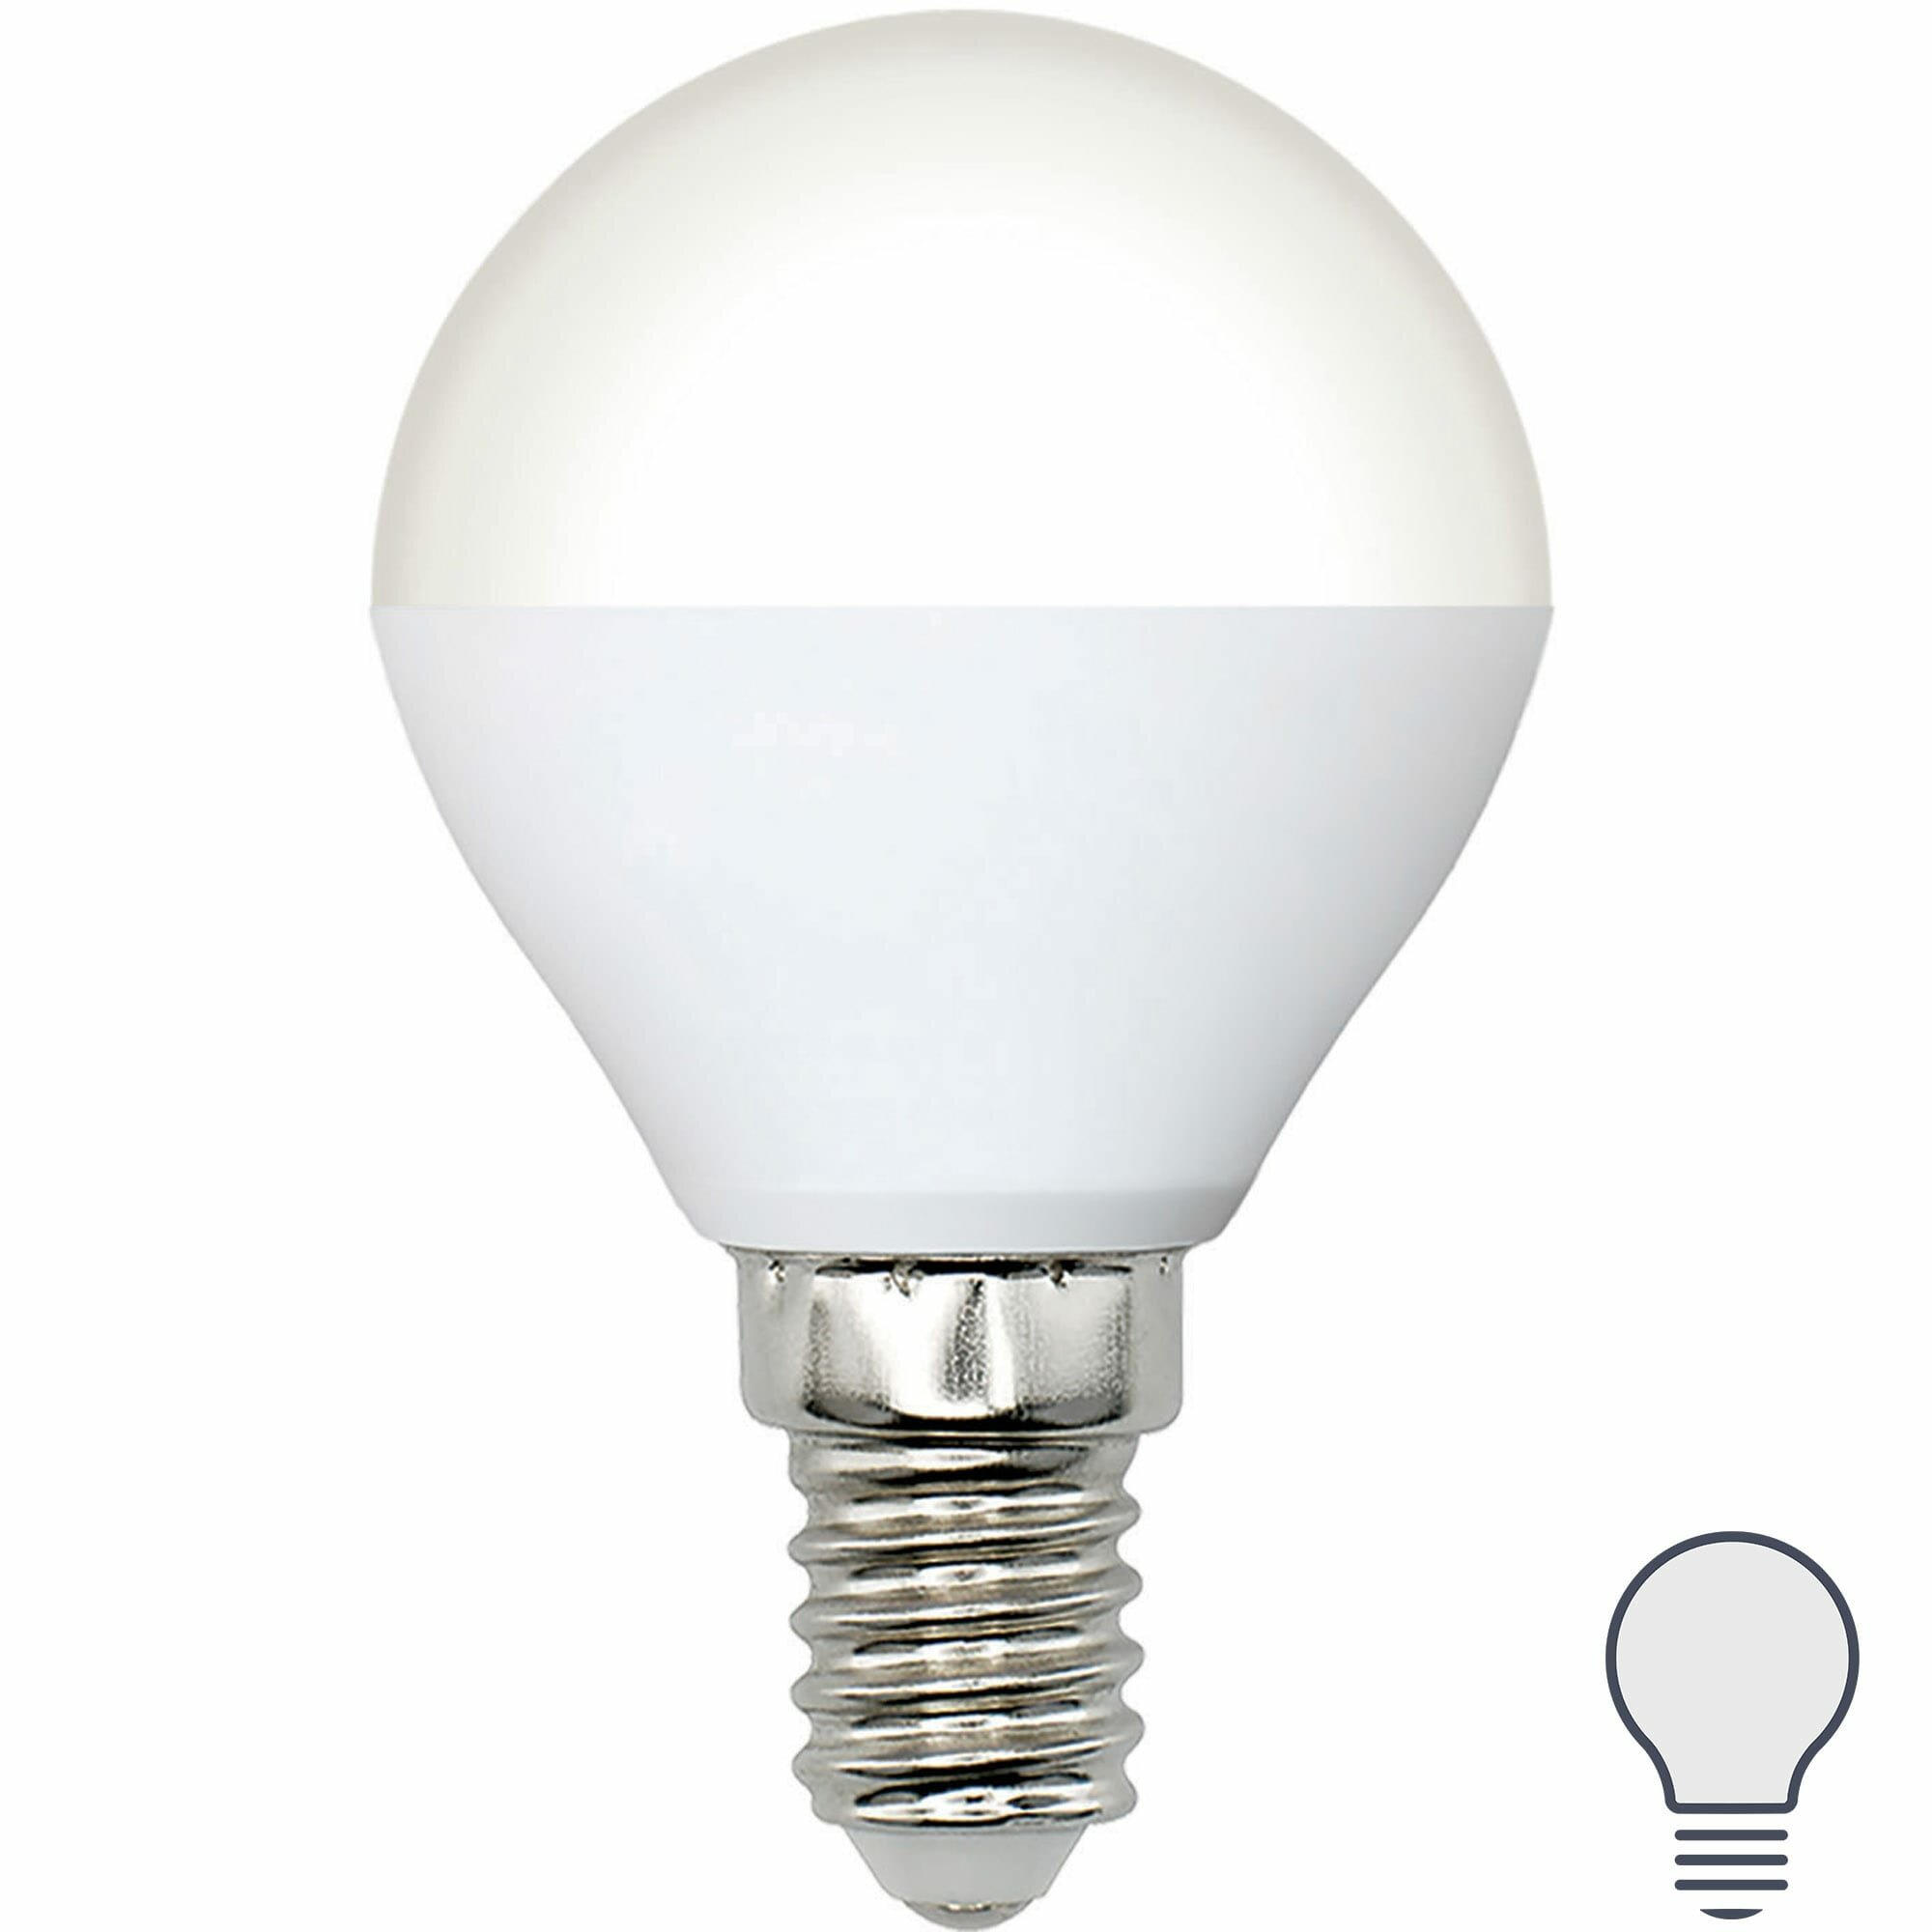 Лампа Volpe Е14 6 Вт шар матовая 600 Лм холодный свет. Набор из 2 шт.